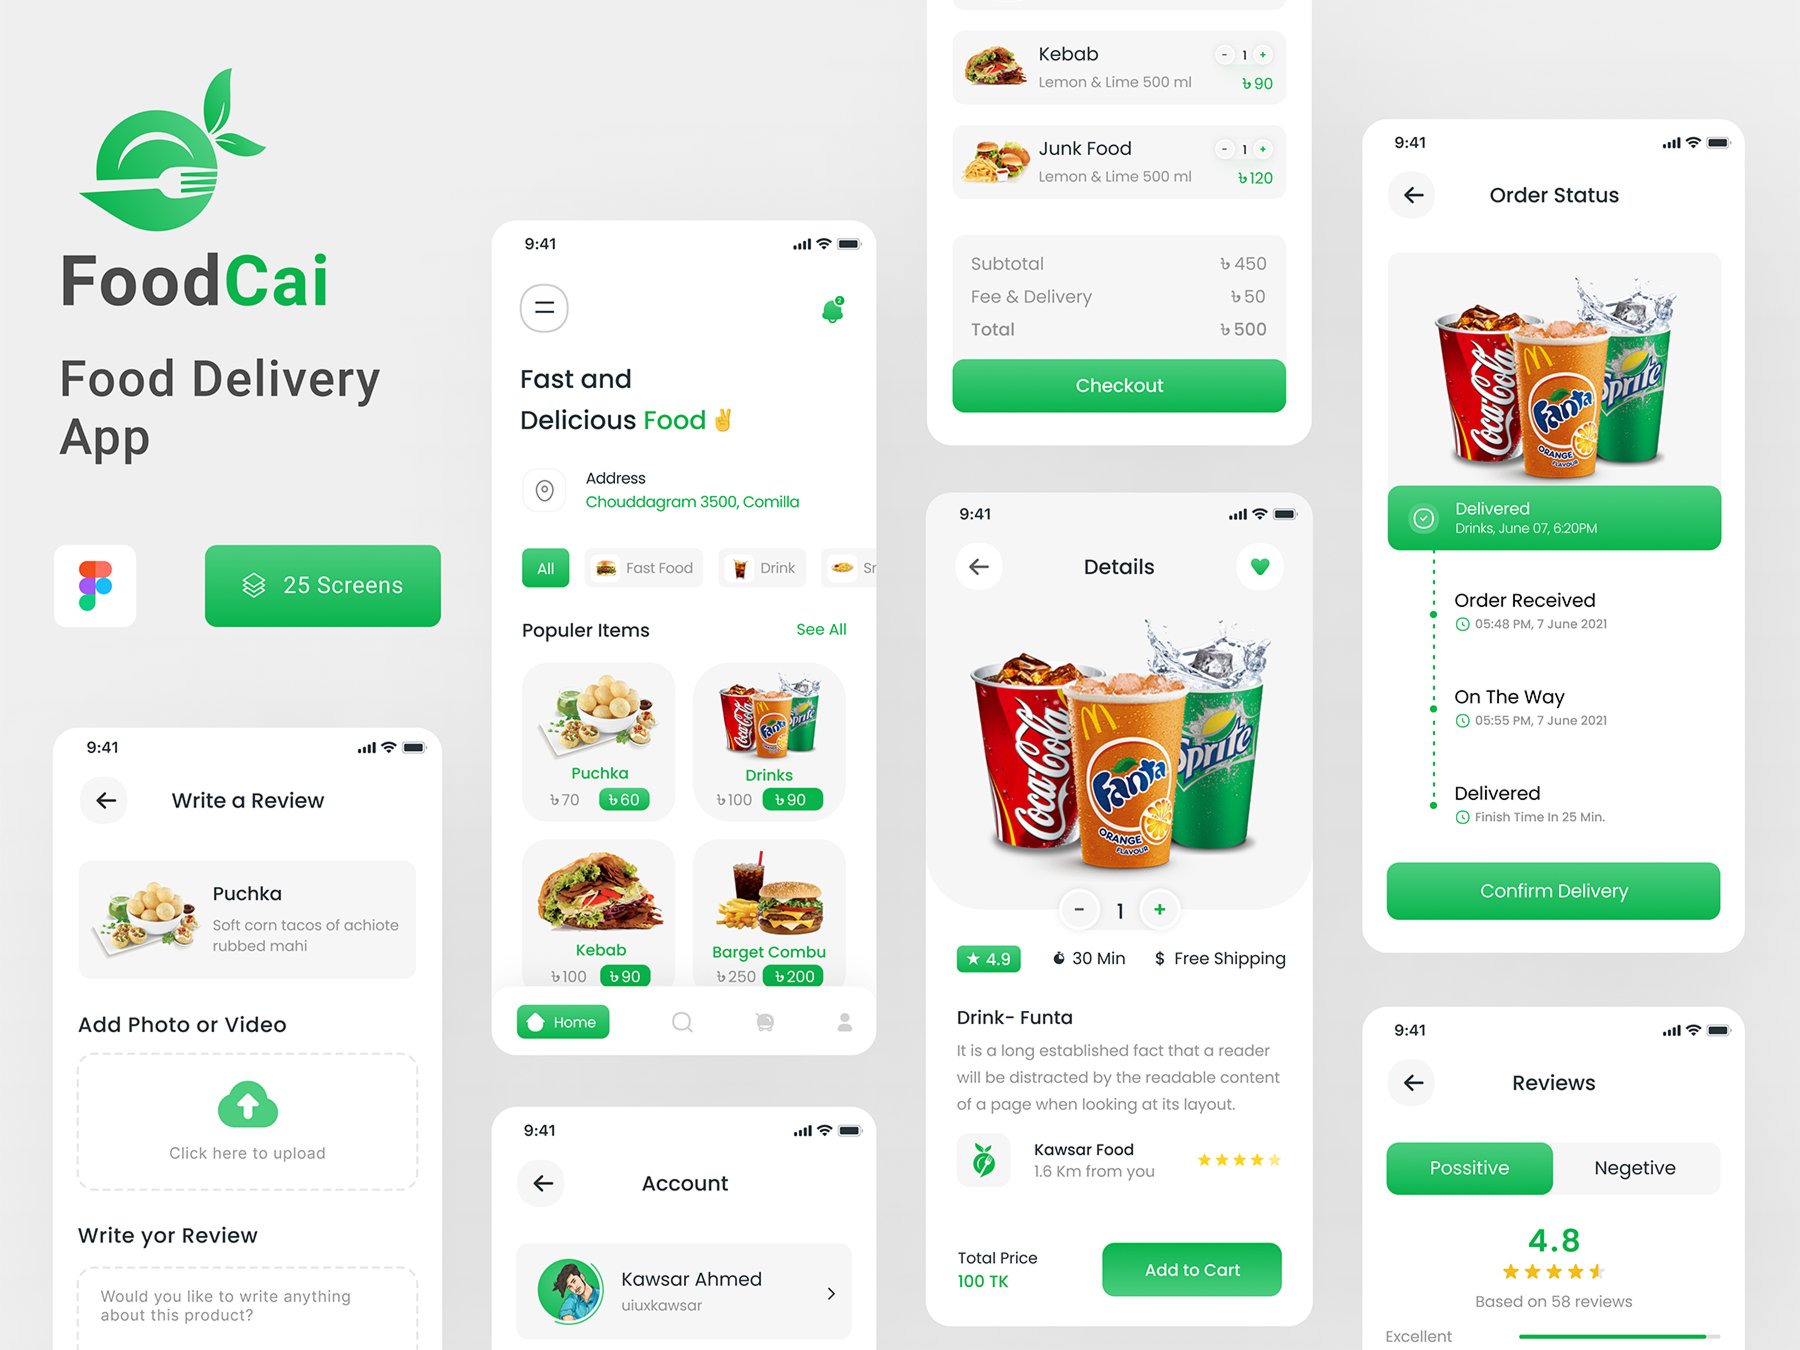 绿色系美食外卖点餐配送APP UI界面设计 Food Delivery Mobile App .fig素材